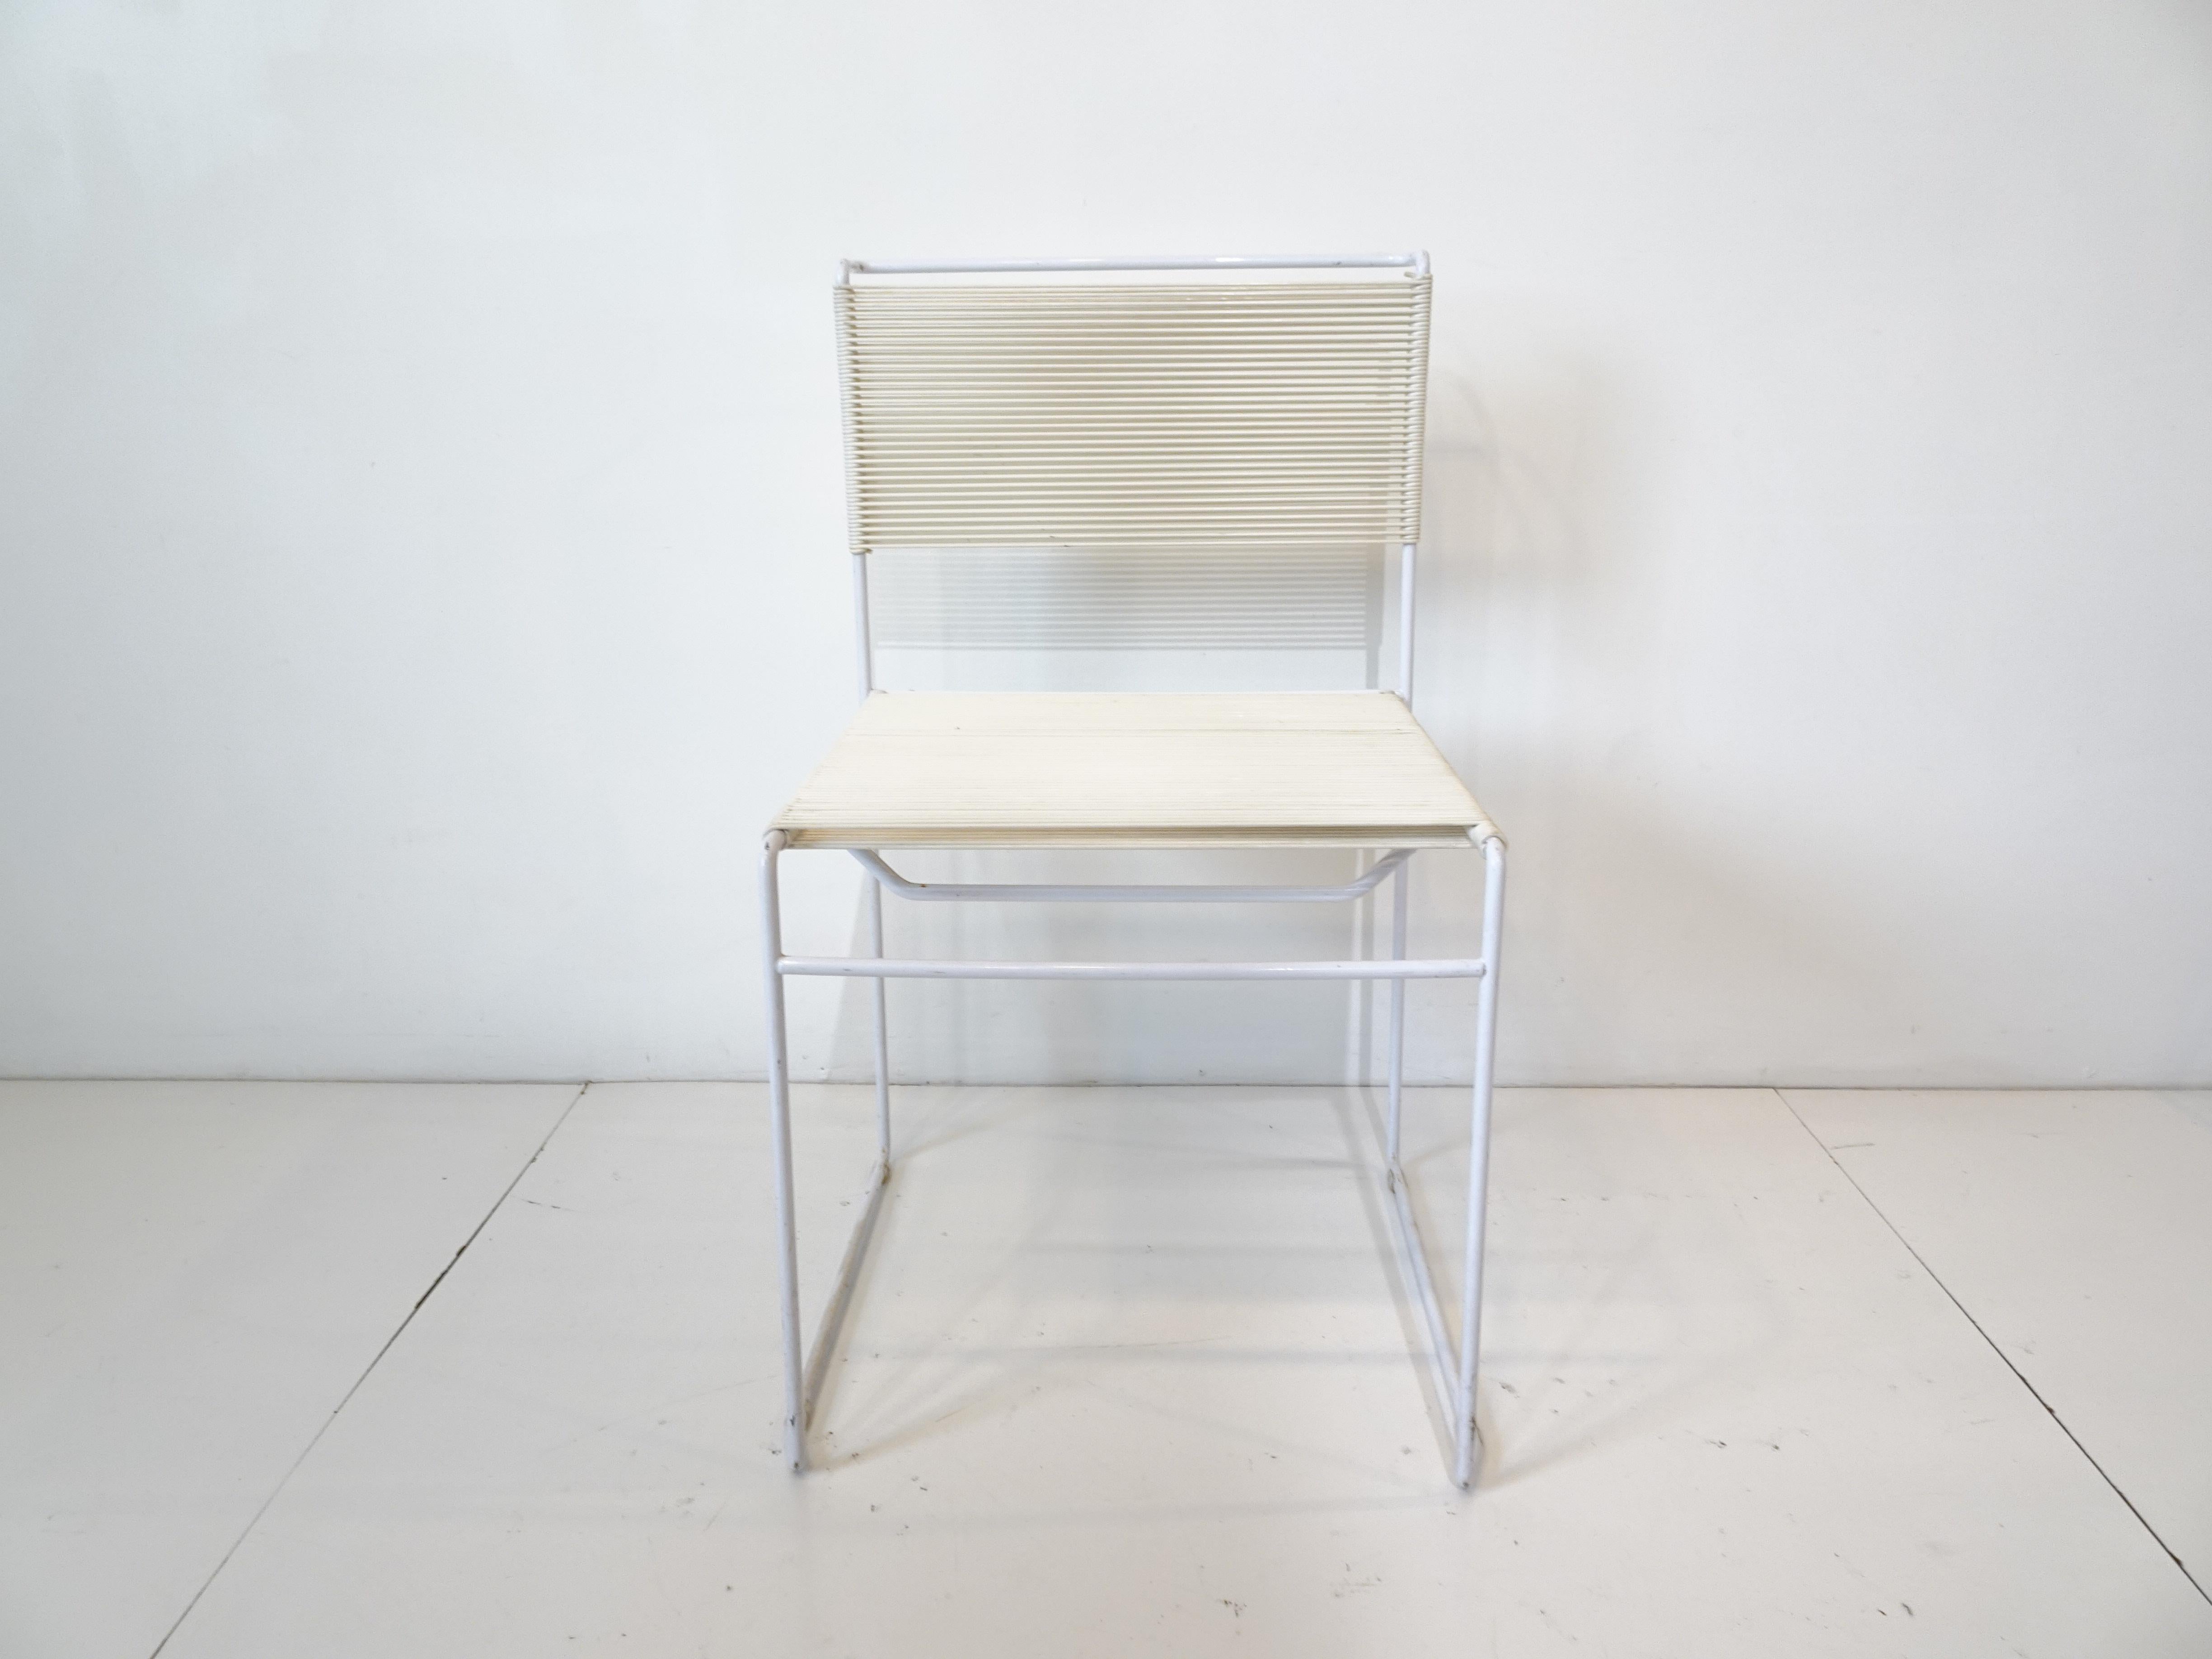 Un ensemble de quatre chaises de salle à manger à armature en acier PVC blanc avec siège et dossier en corde de nylon tissée, appelé chaise Spaghetti, conçu par Giandomenico Belotti. Fabriqué en Italie par Flyline / Alias ayant ce style Memphis qui